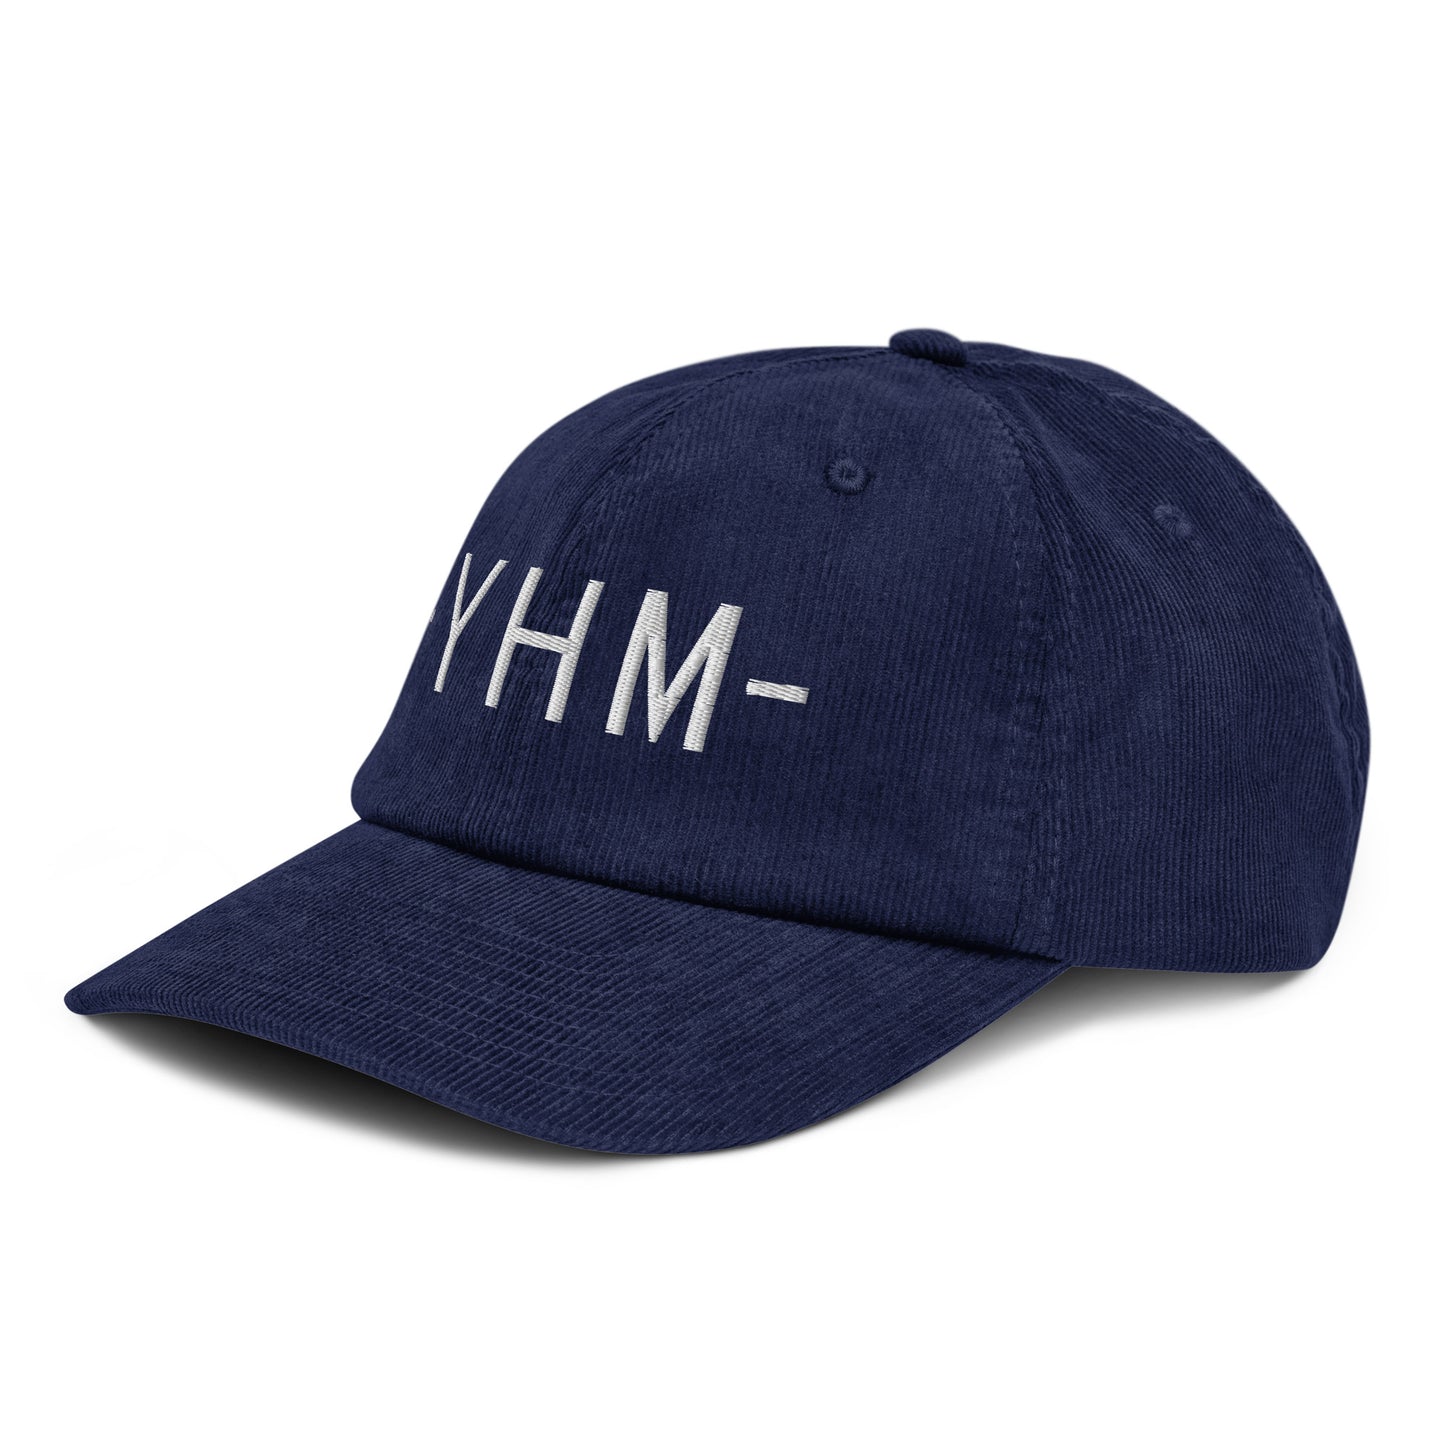 Souvenir Corduroy Hat - White • YHM Hamilton • YHM Designs - Image 01